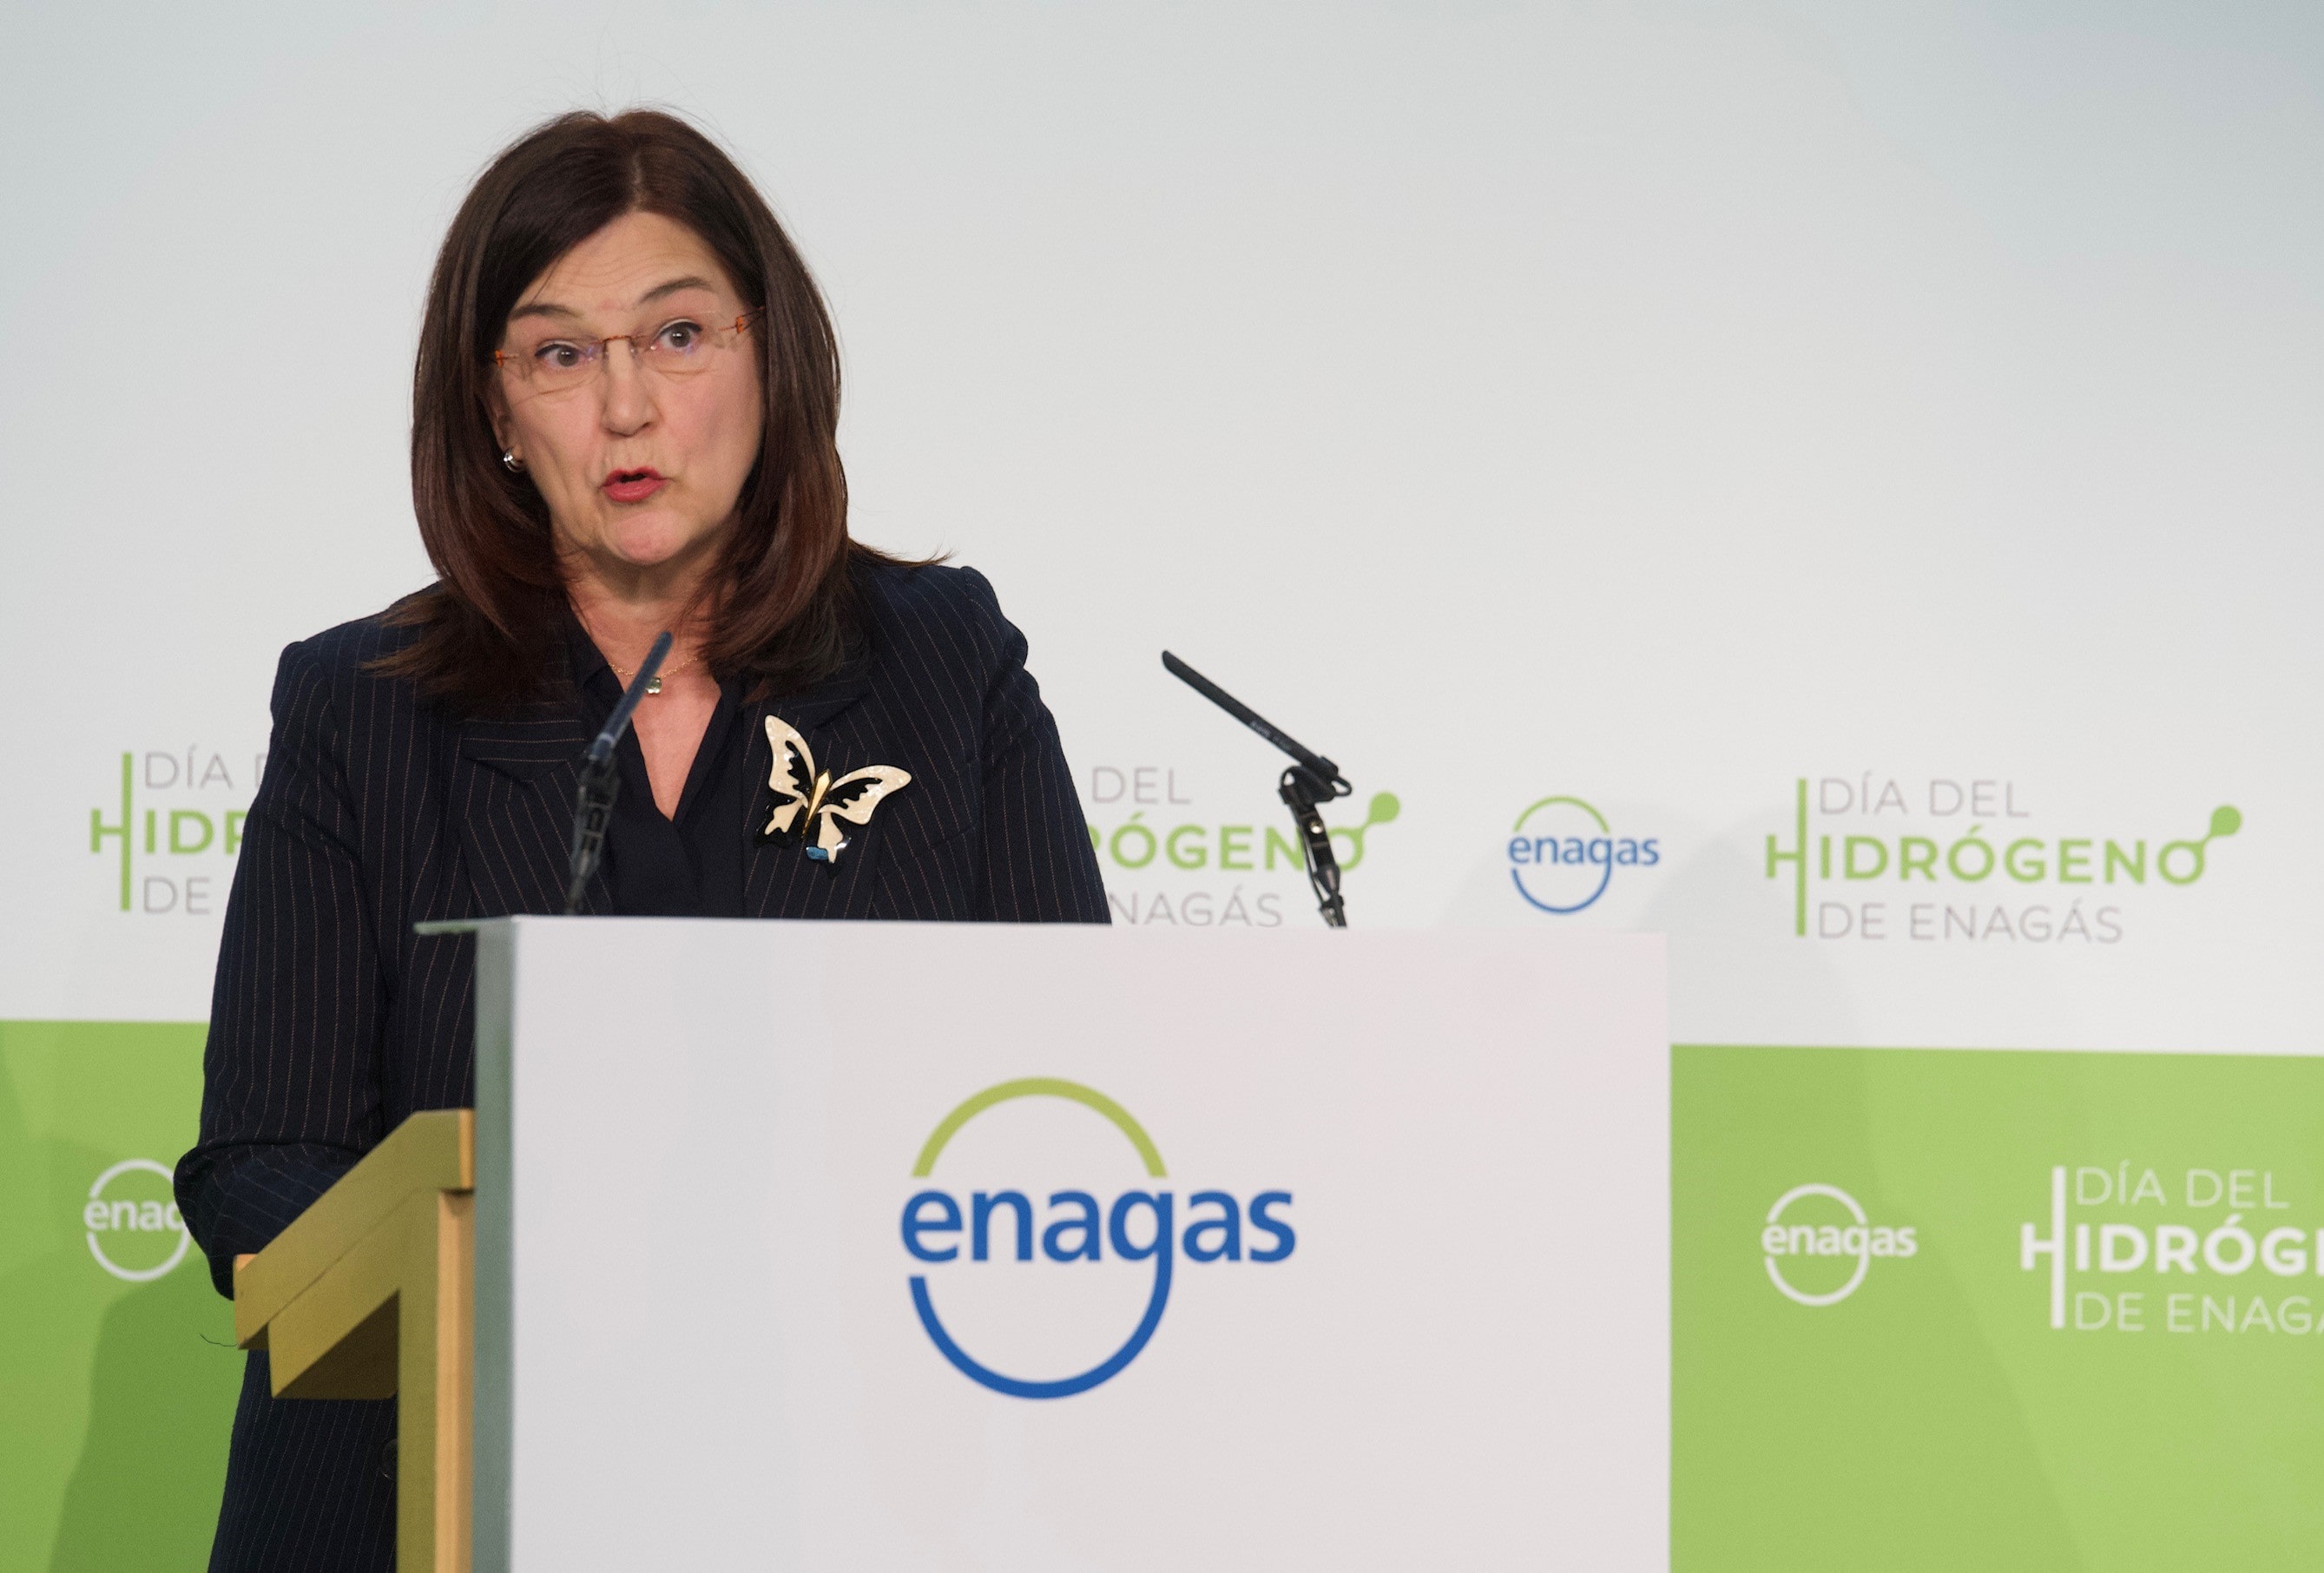 La presidenta de la CNMC, Cani Fernández, clausurando el Día del Hidrógeno de Enagás.